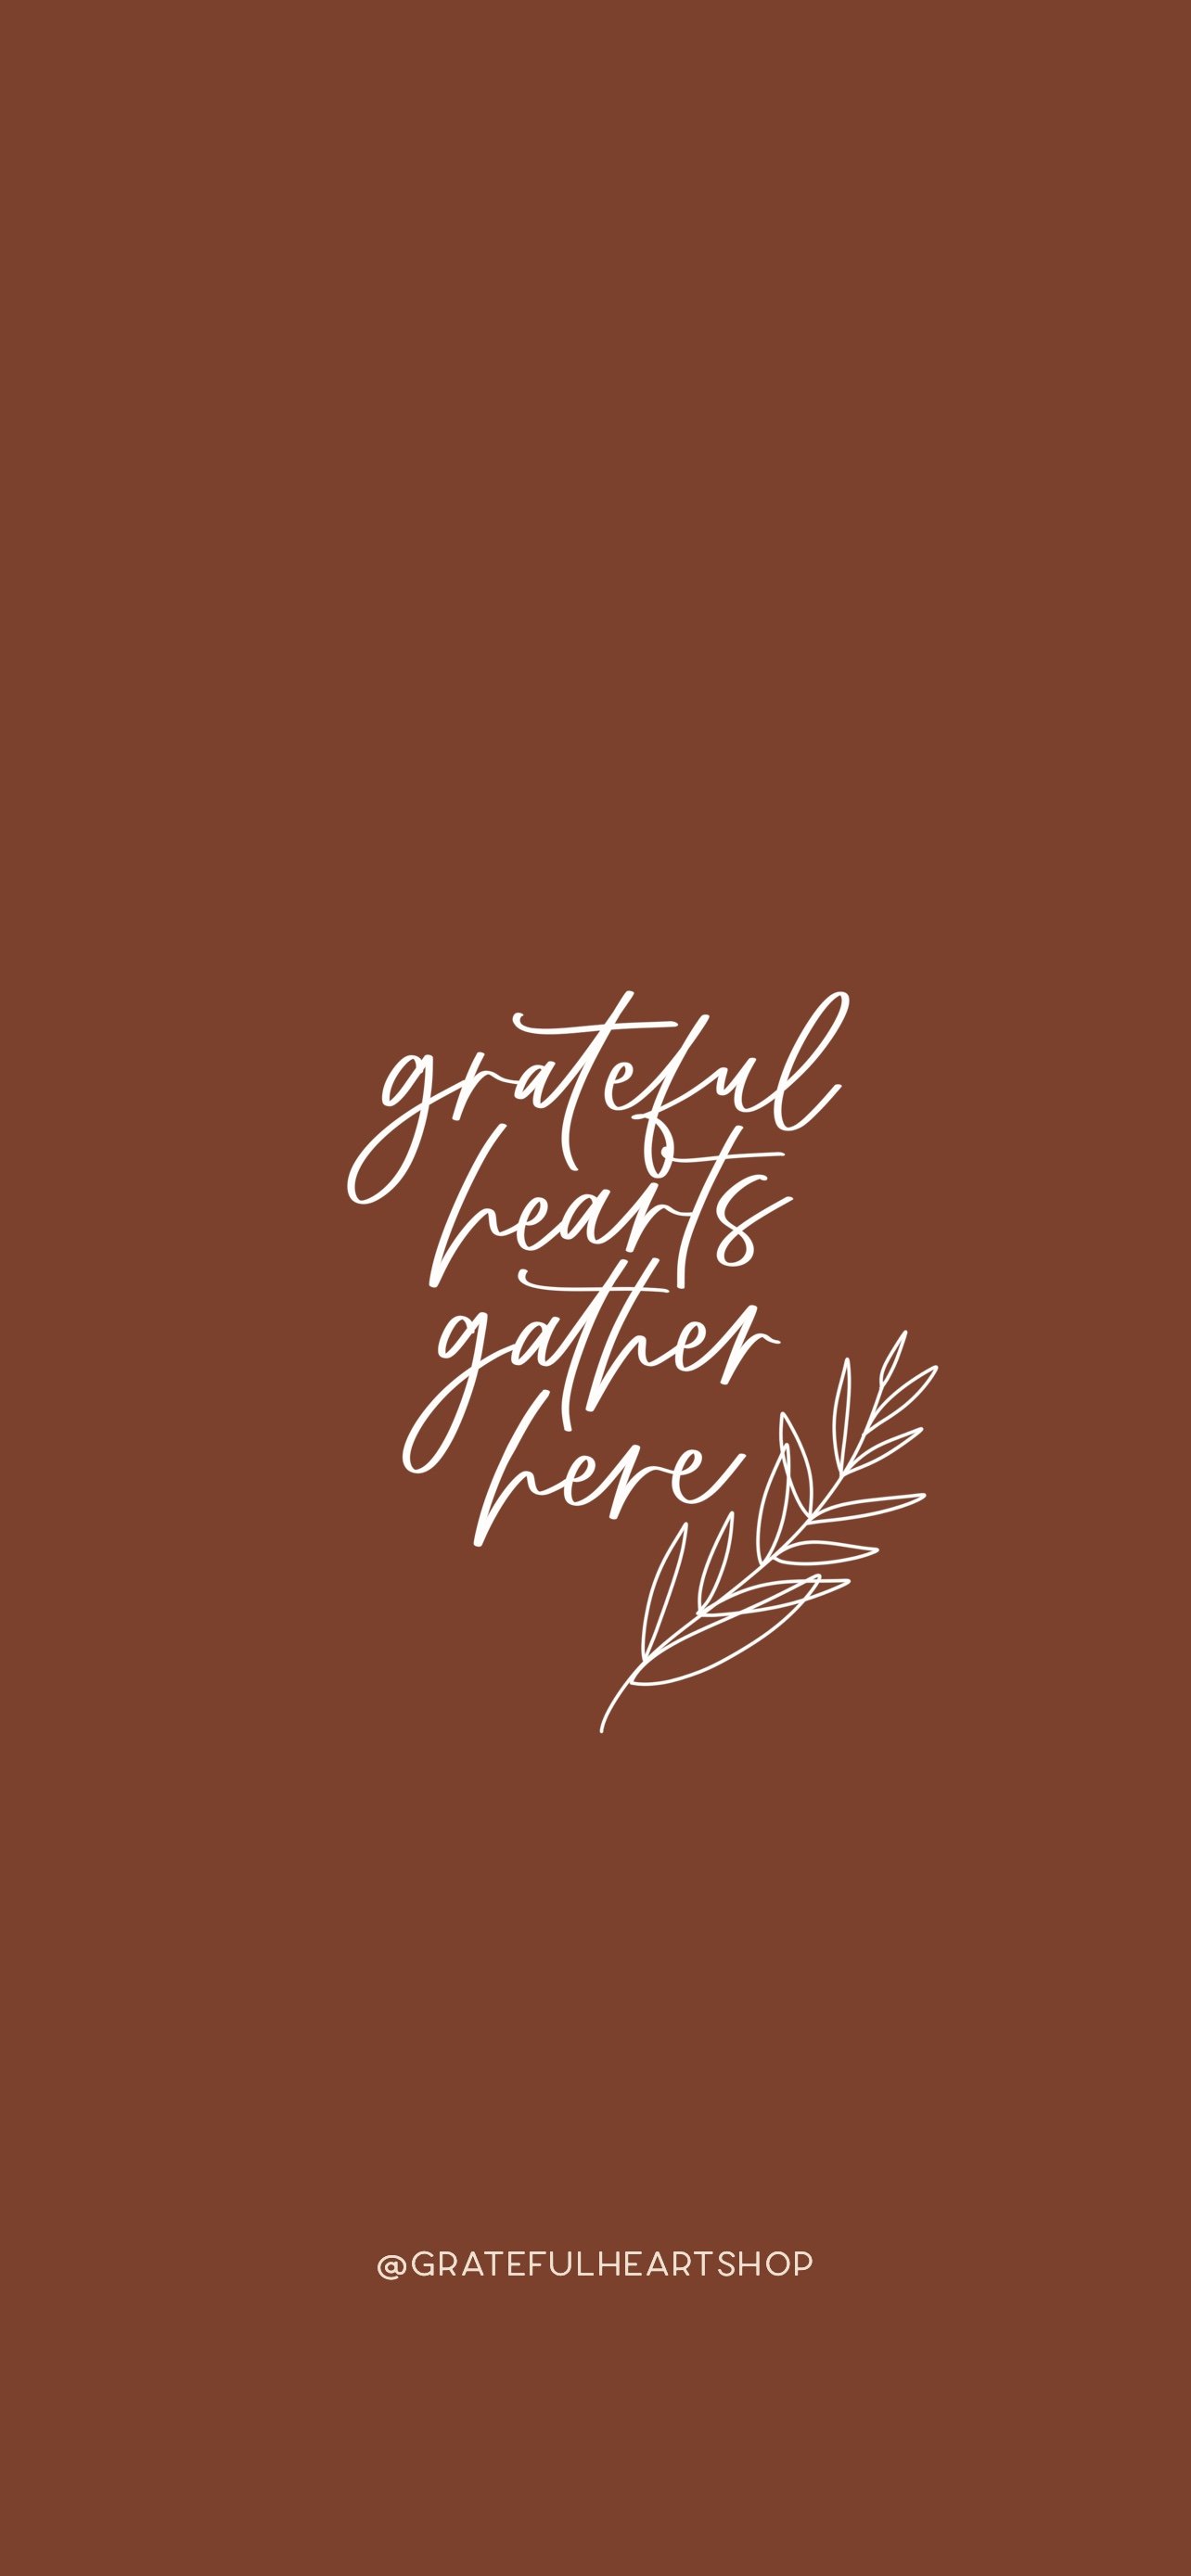 Blog — Grateful Heart Shop